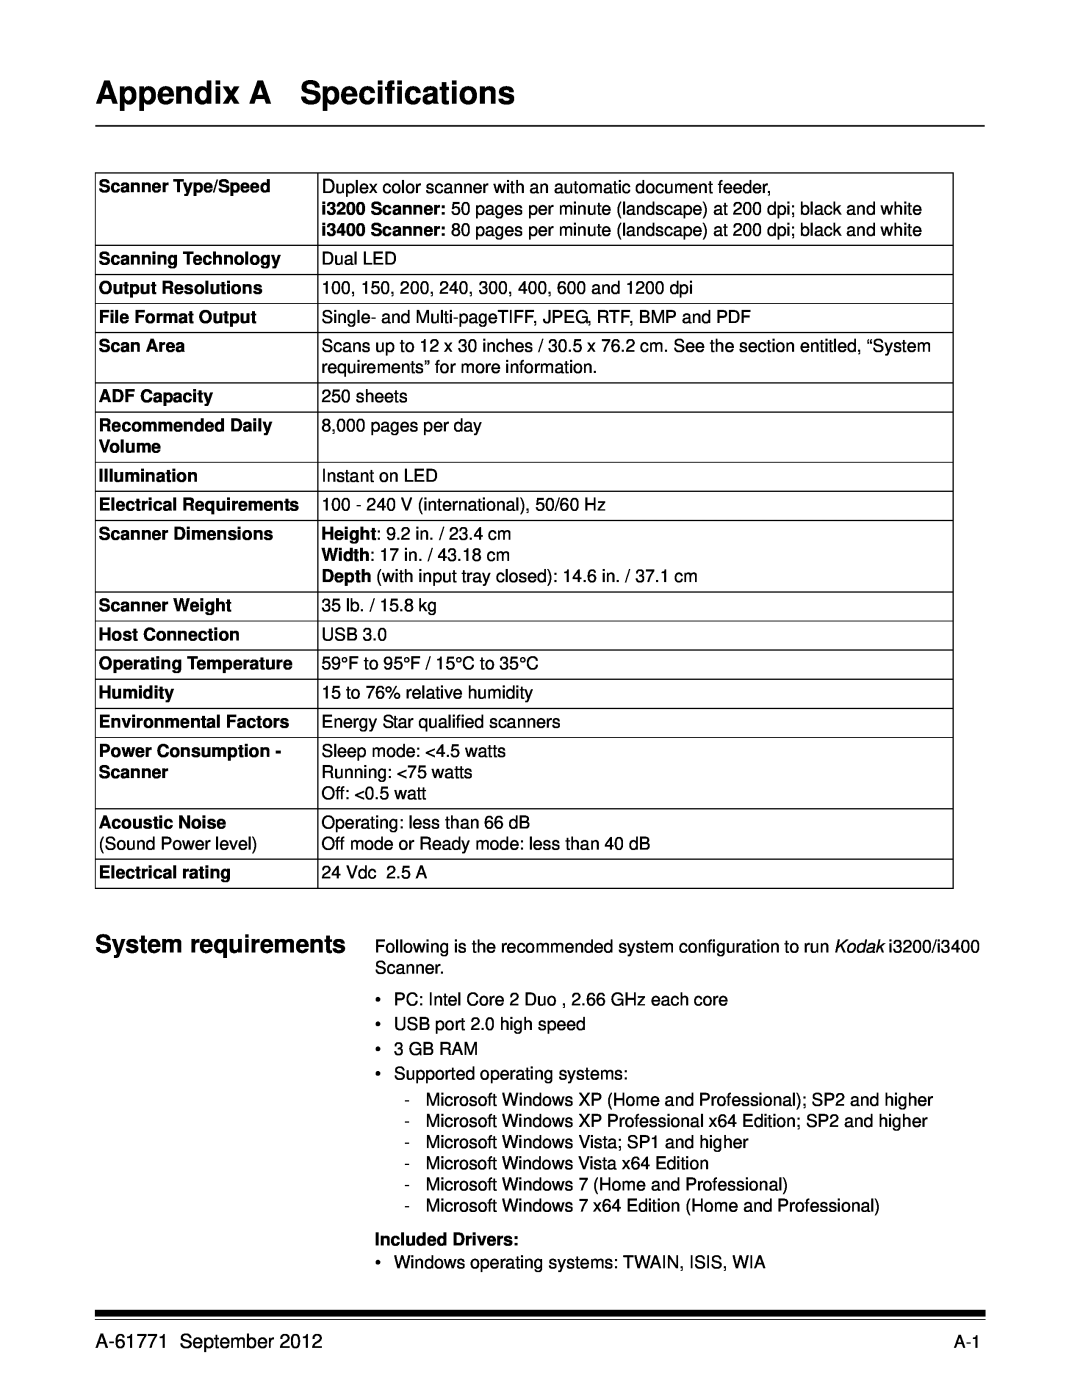 Kodak I3400, I3200 manual Appendix A, Specifications, A-61771 September 